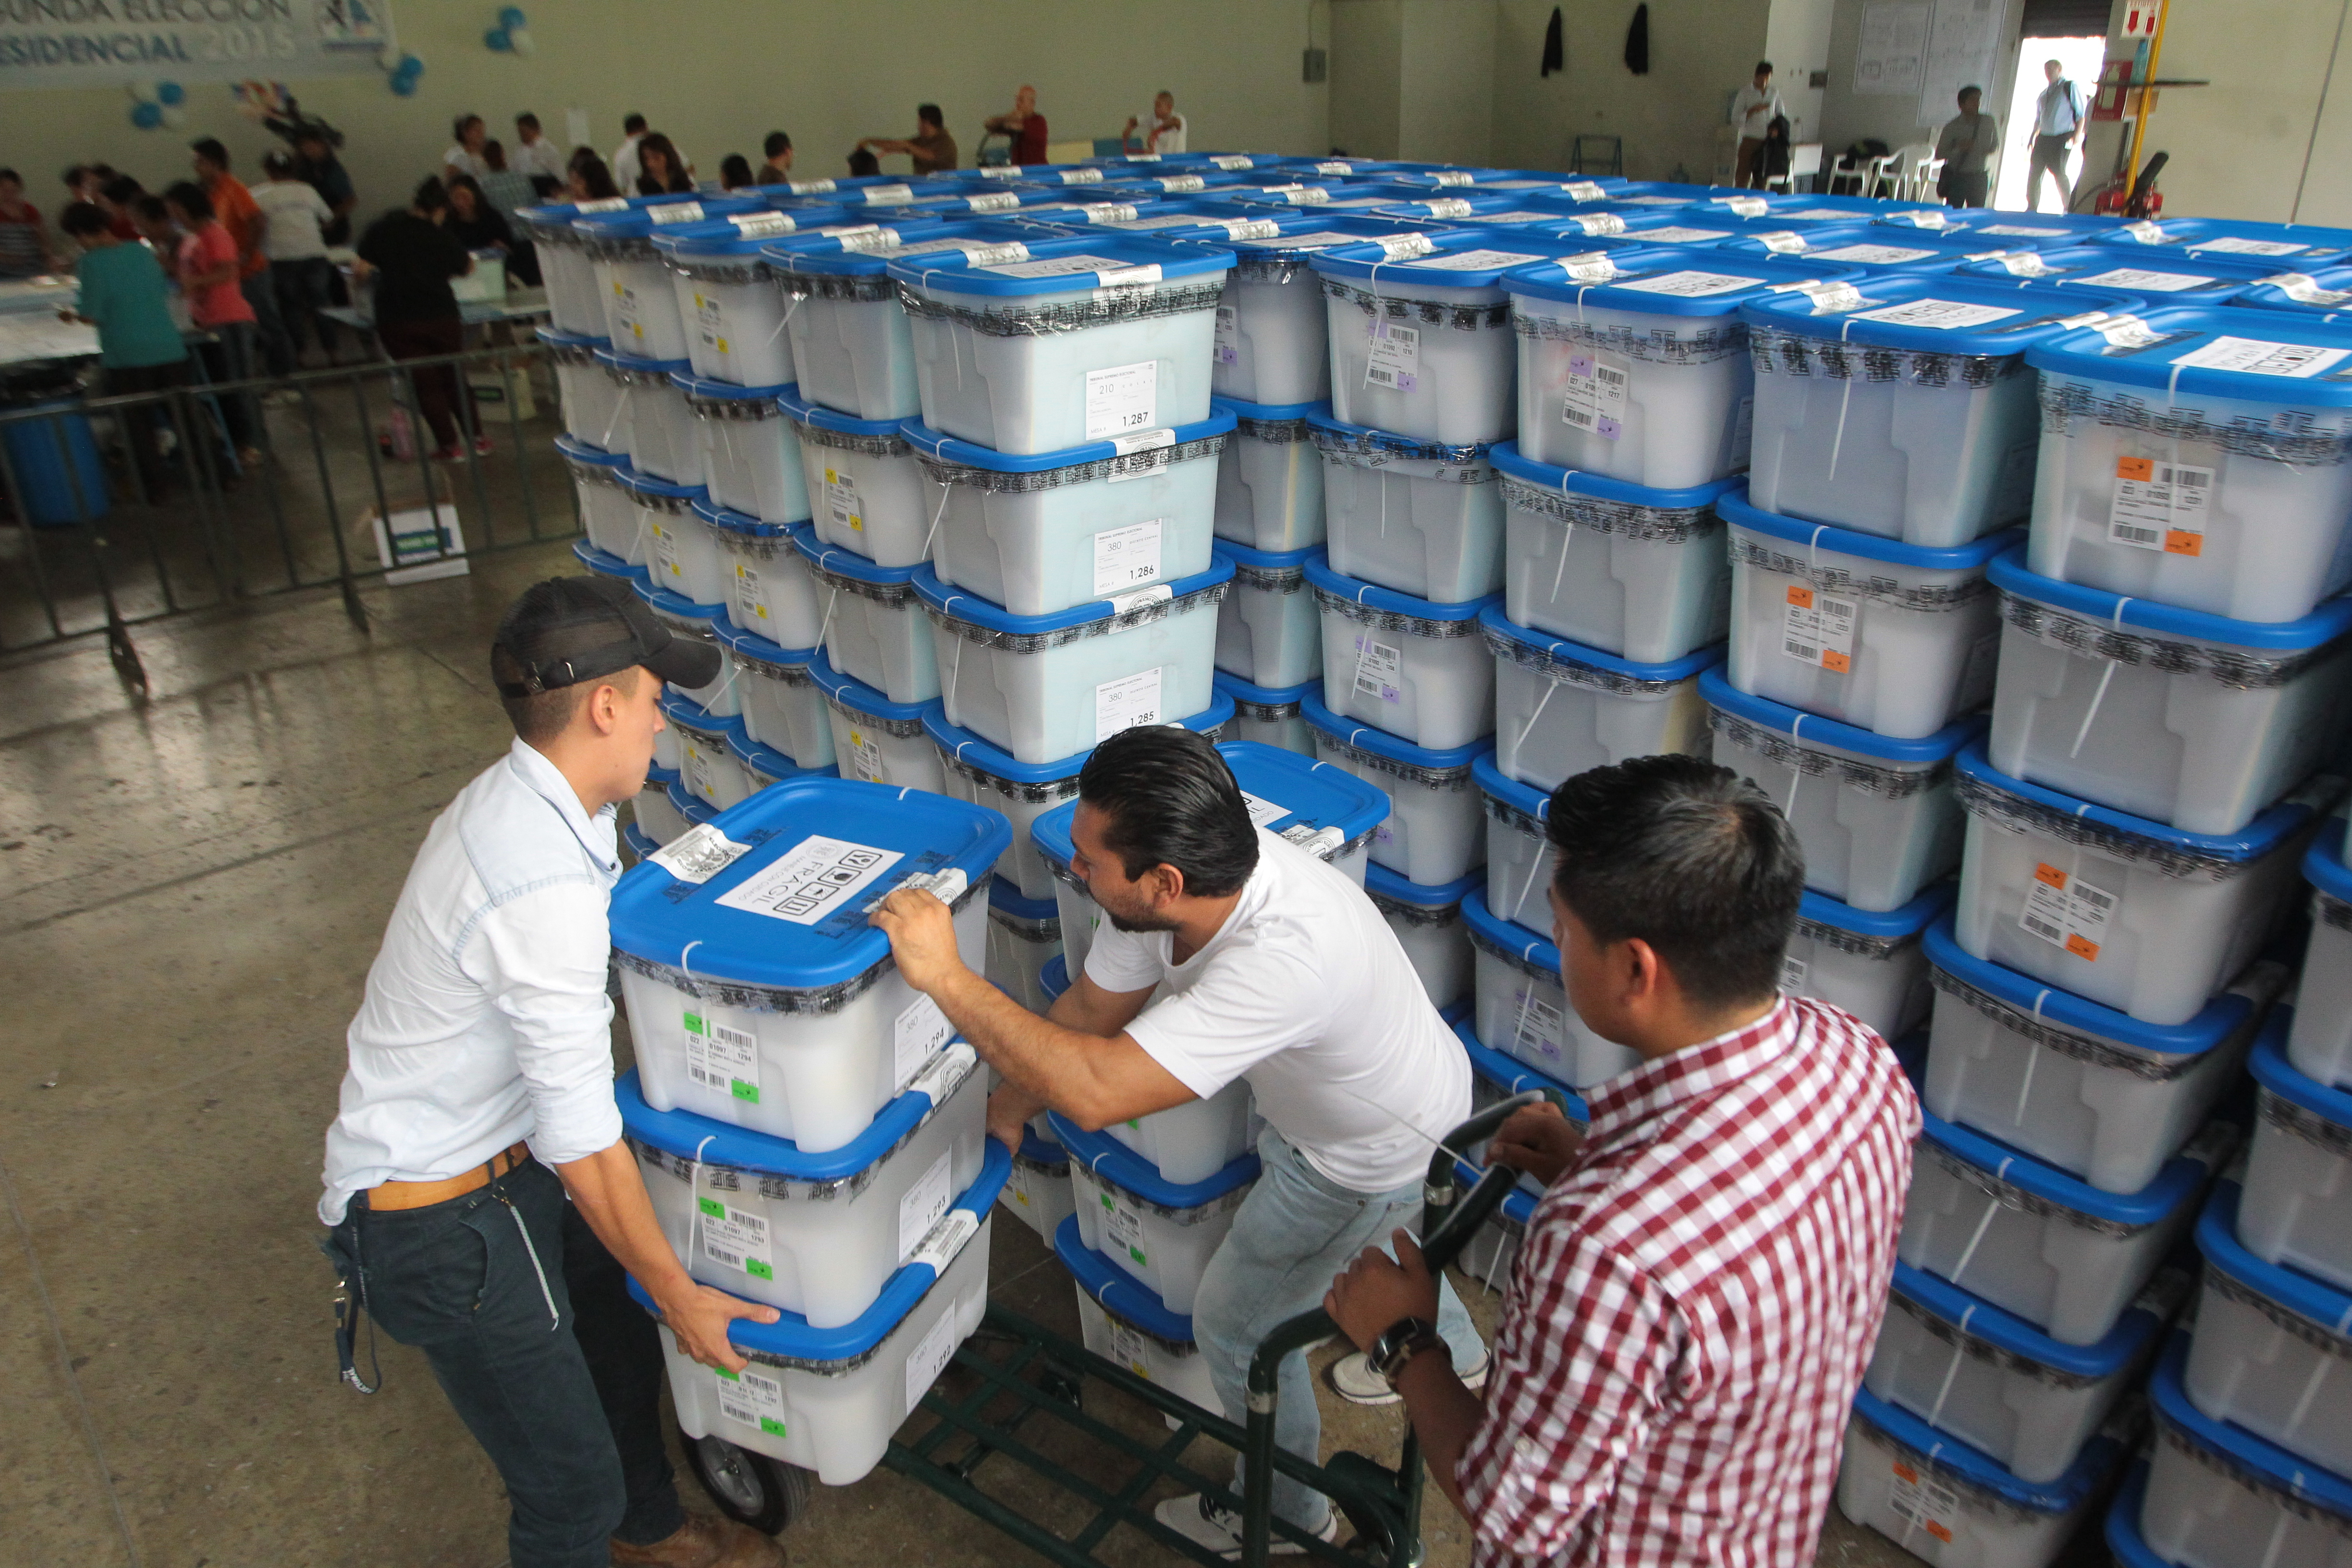 La cercanía de las elecciones generales y la incertidumbre del proceso actual generan incertidumbre sobre los agentes económicos, según la encuesta del Banguat. (Foto Prensa Libre: Heroteca)